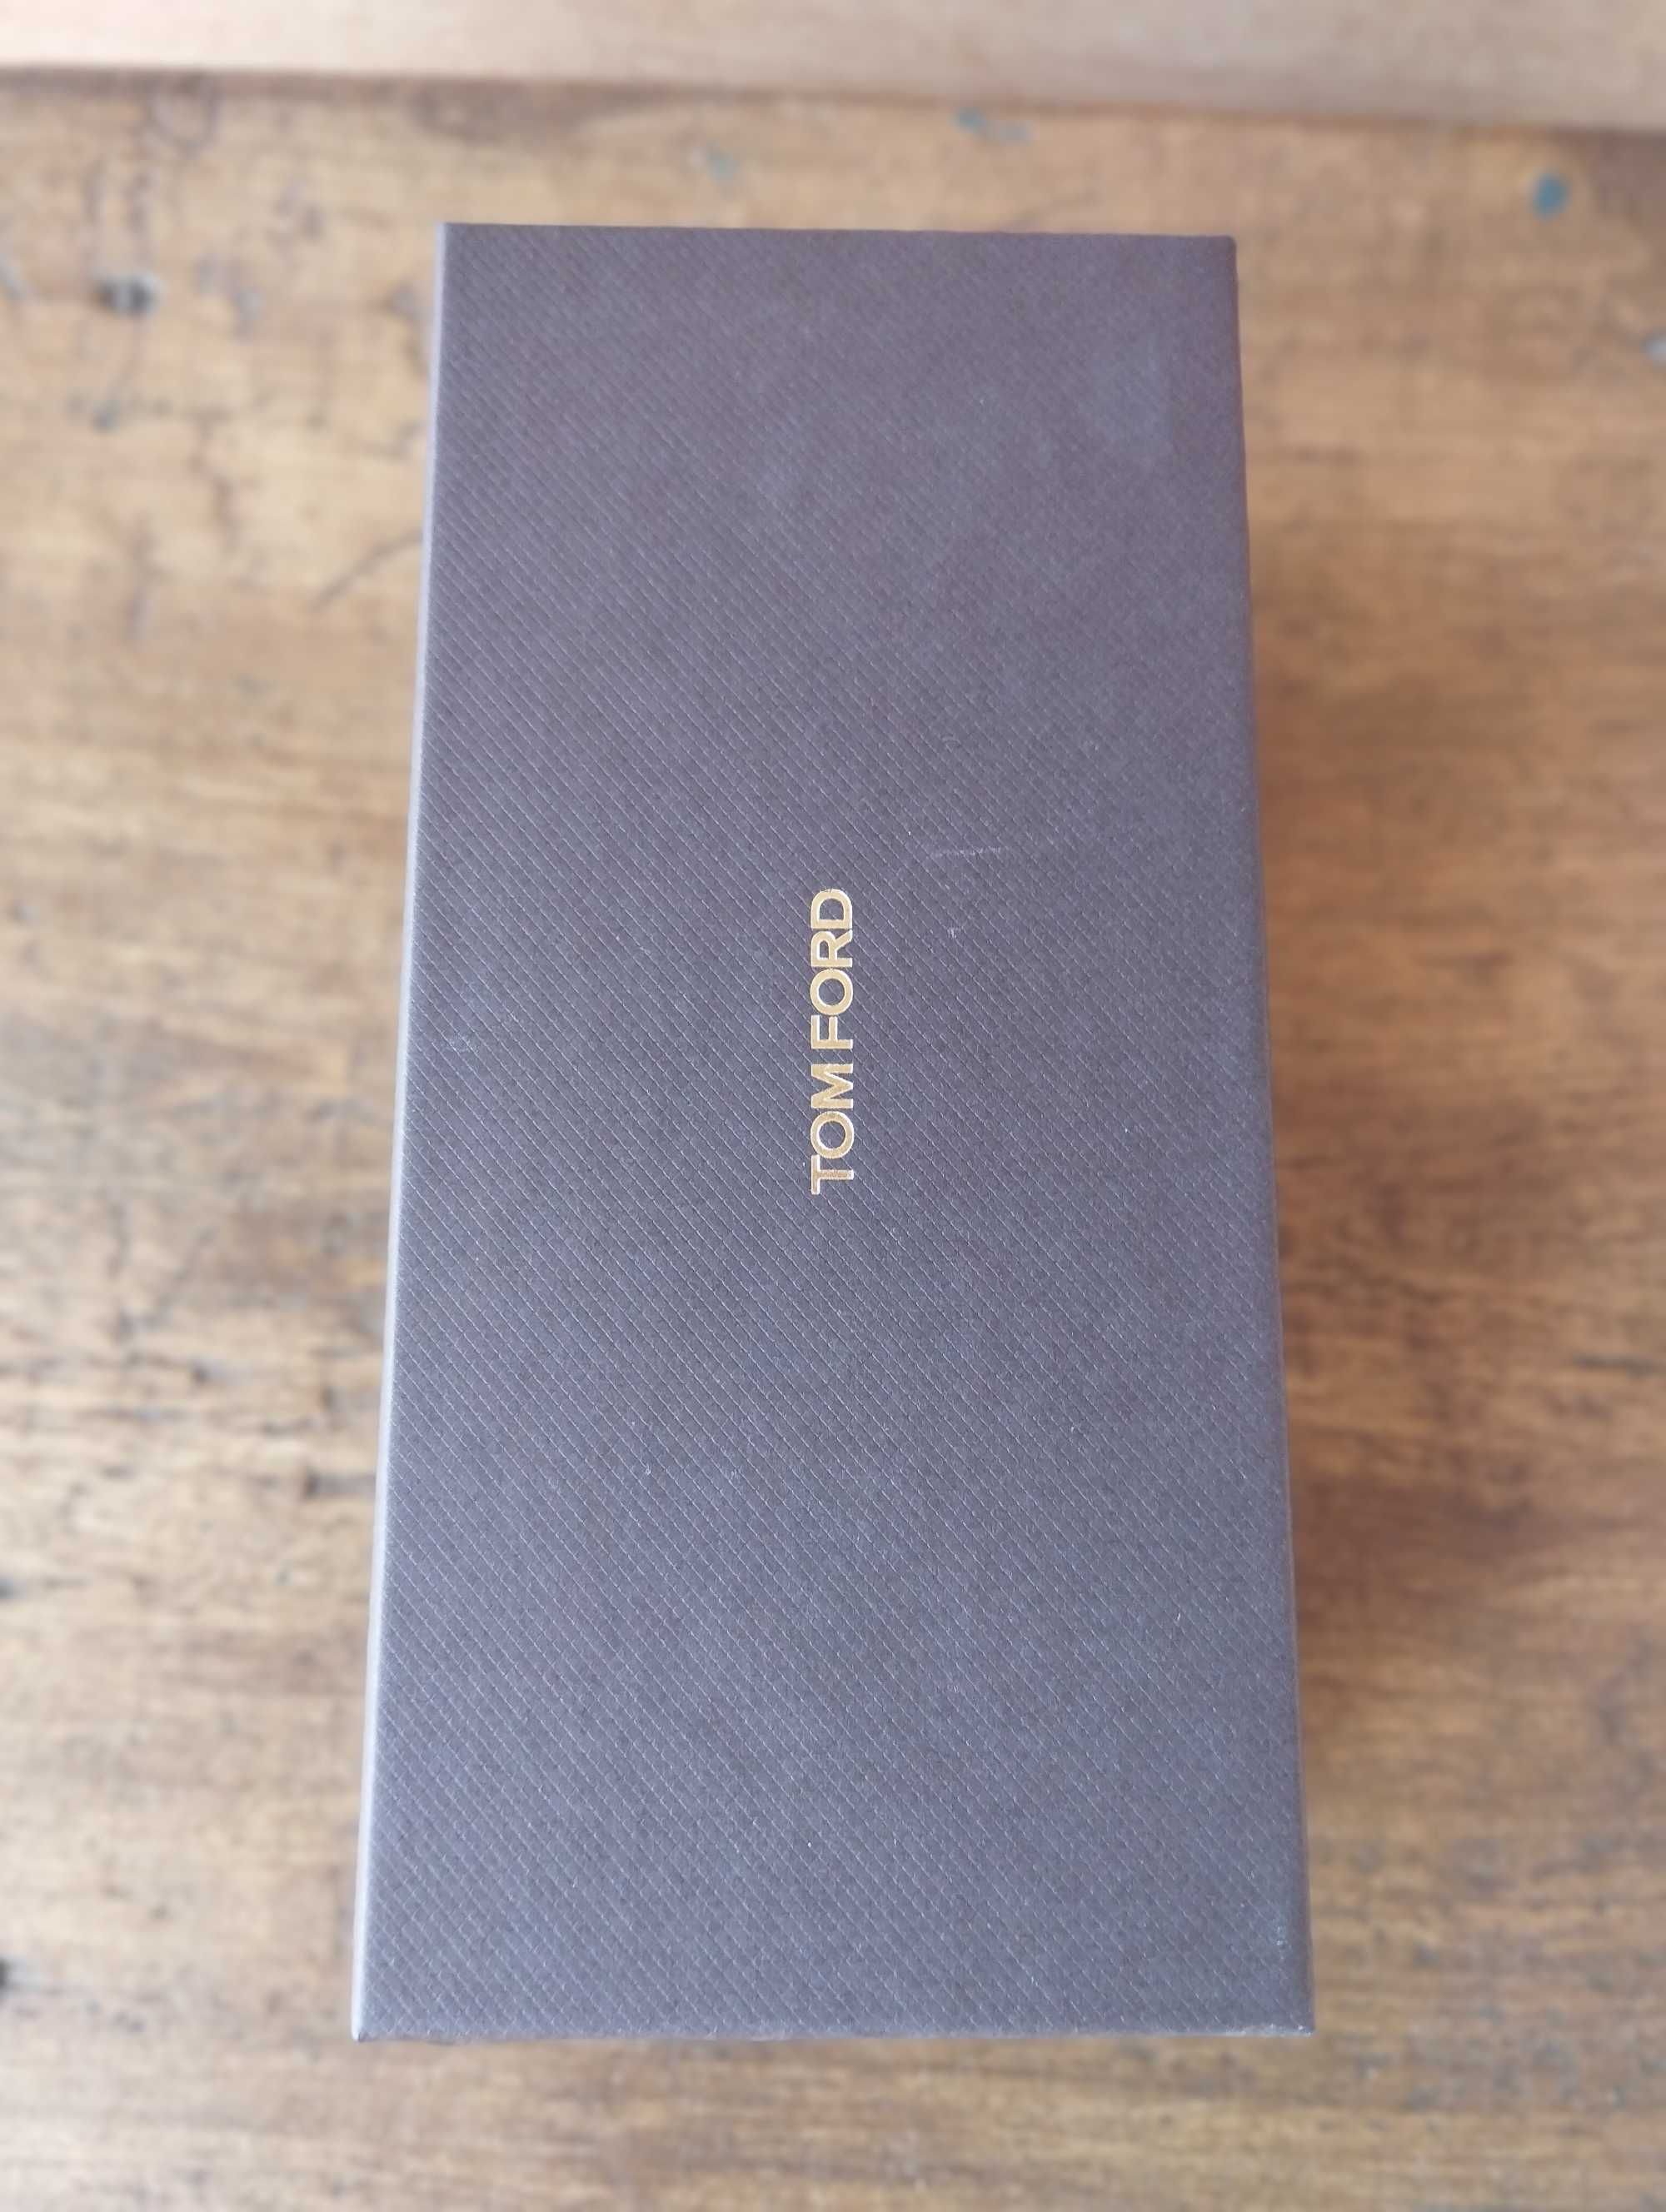 Коробка (упаковка) от очков TOM FORD цвет коричневый